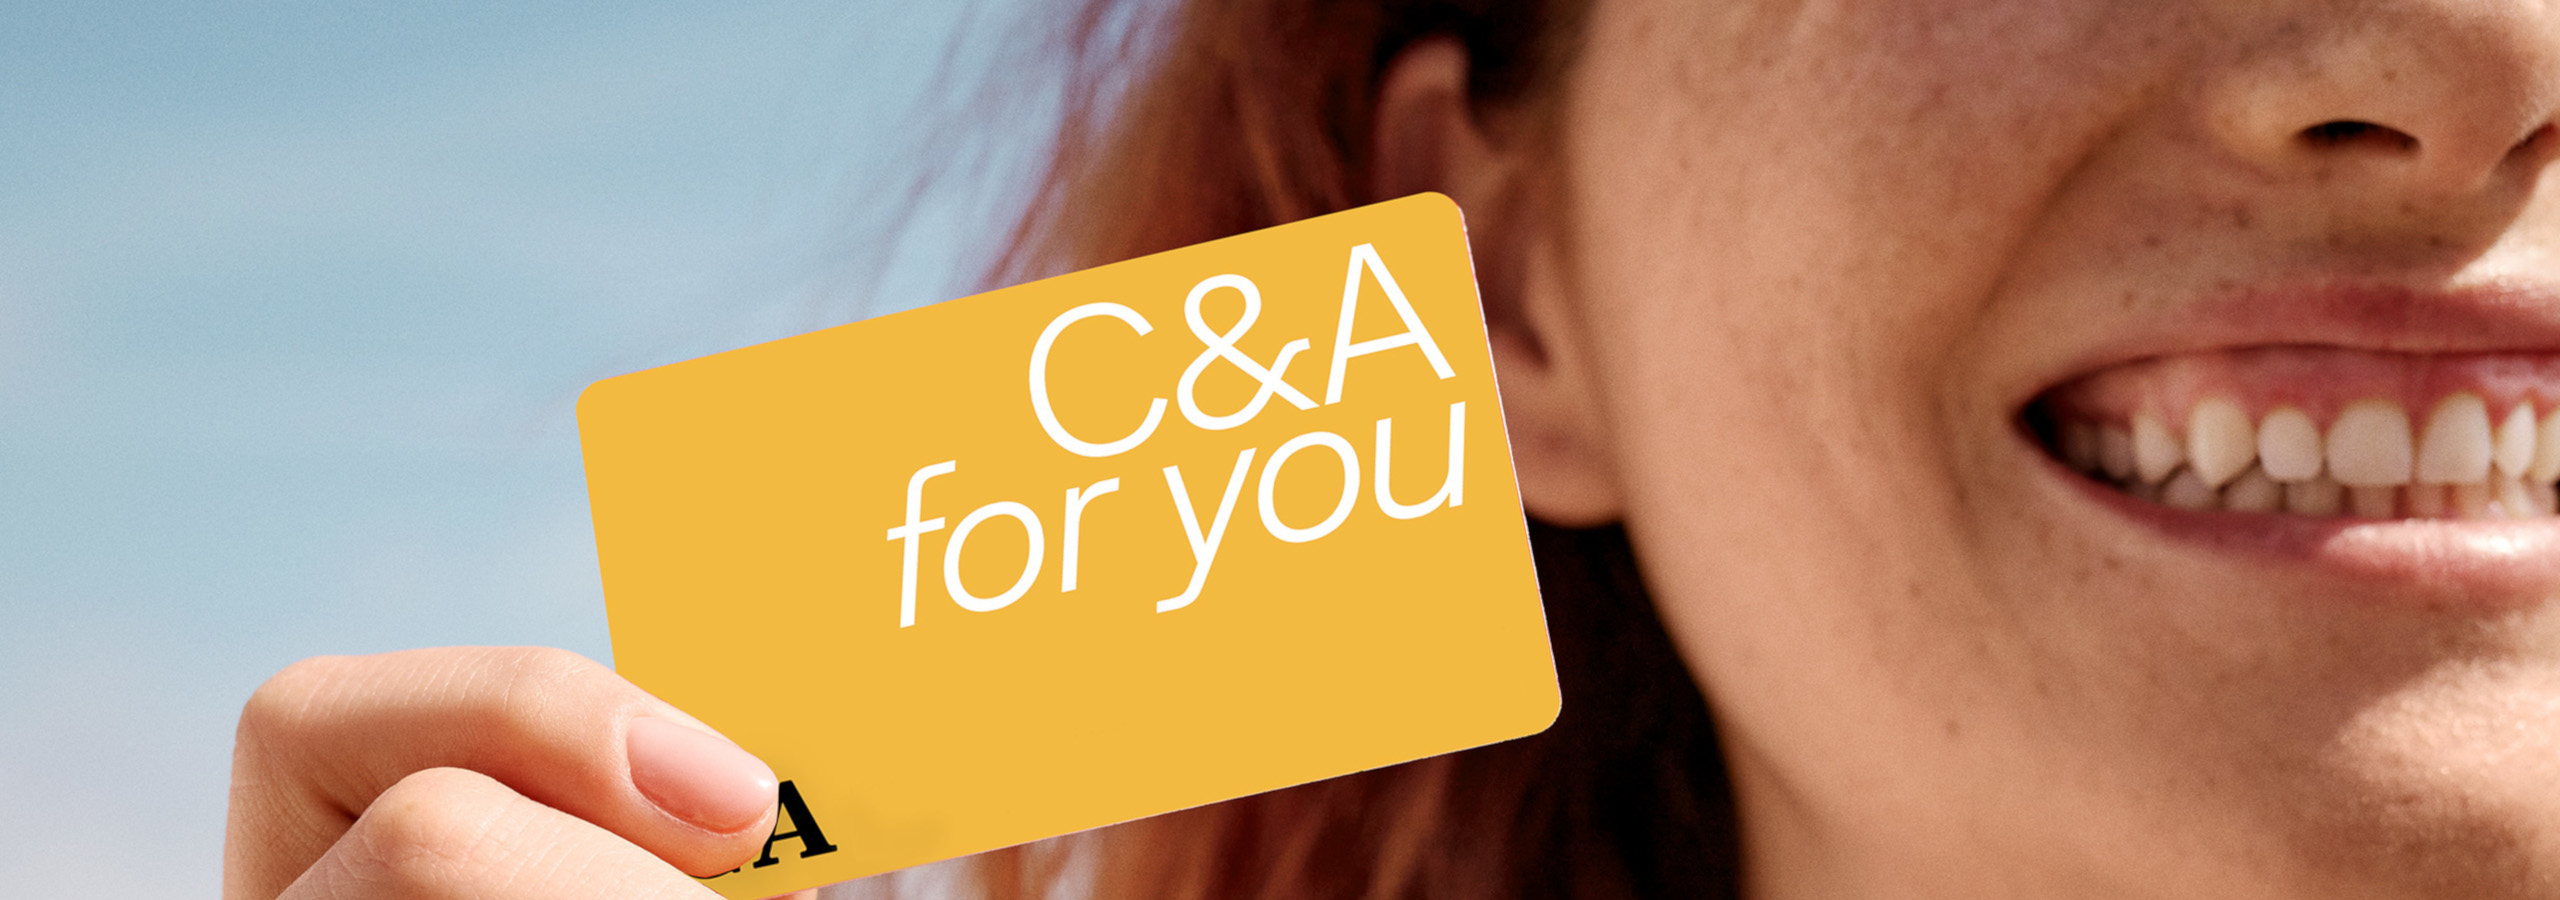 C&A for you is ons gratis klantprogramma: meld je nu aan en krijg 10% korting op je volgende aankoop!